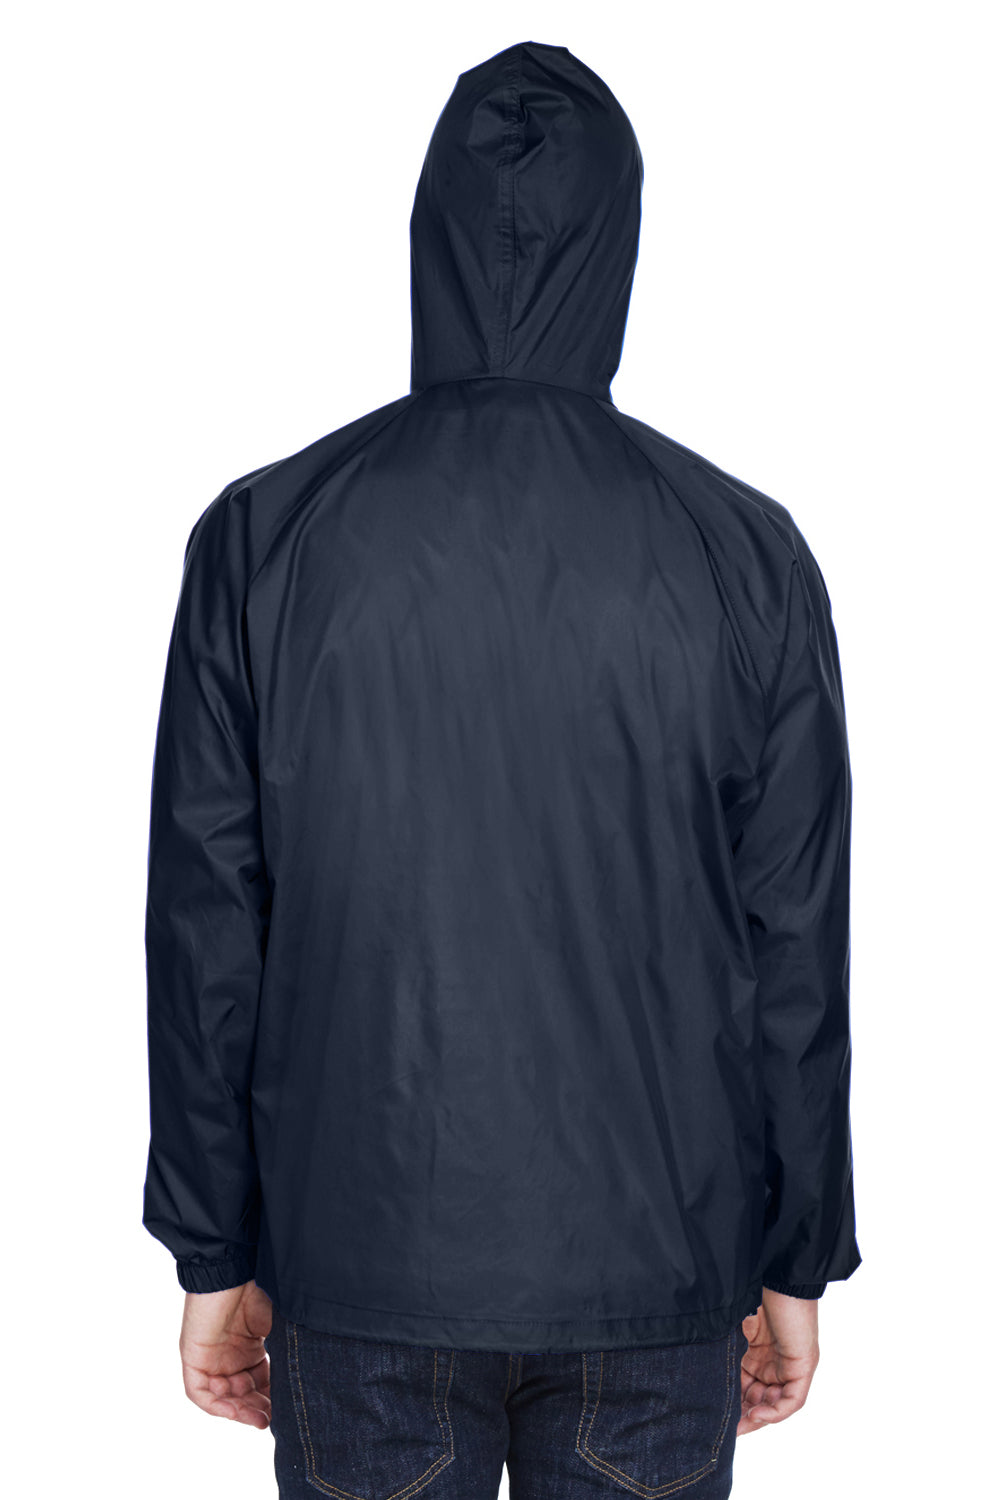 UltraClub 8925 Mens Pack Away Wind & Water Resistant 1/4 Zip Hooded Jacket Navy Blue Back